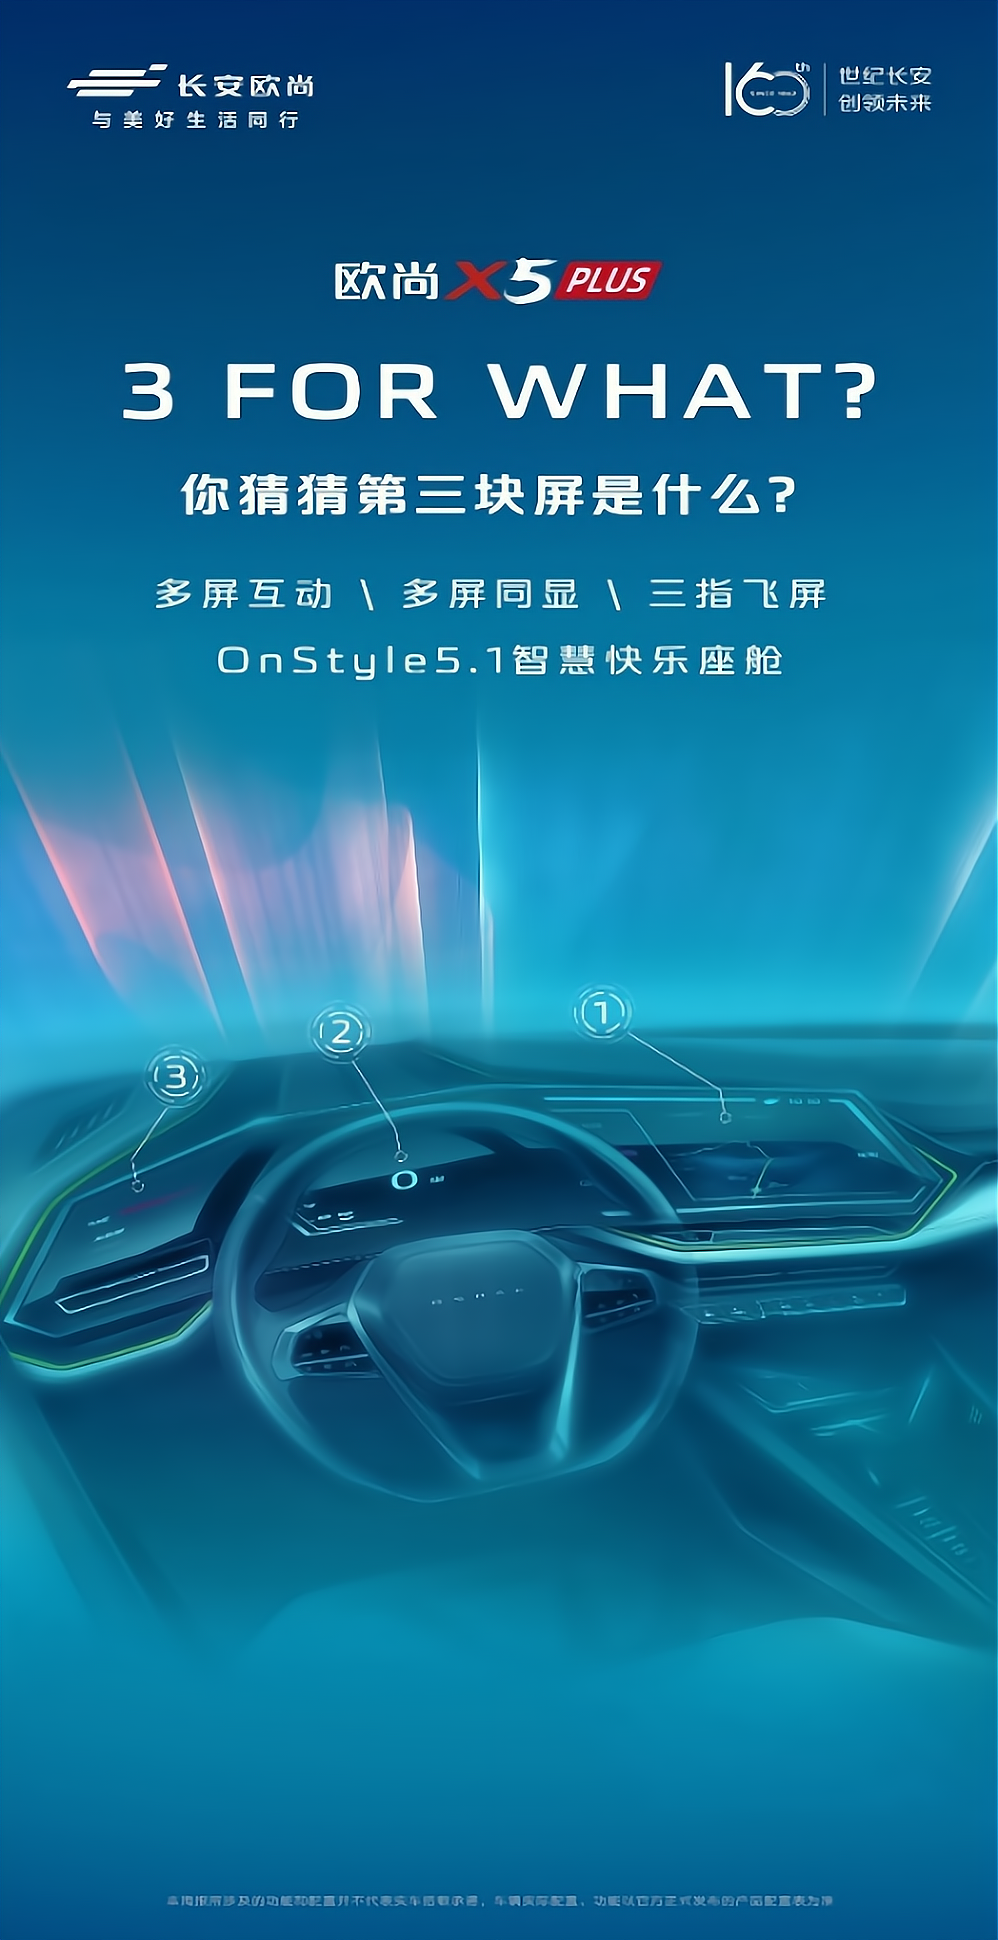 欧尚X5 PLUS30寸环抱式智慧三联屏手绘图海报。 欧尚汽车供图 华龙网发